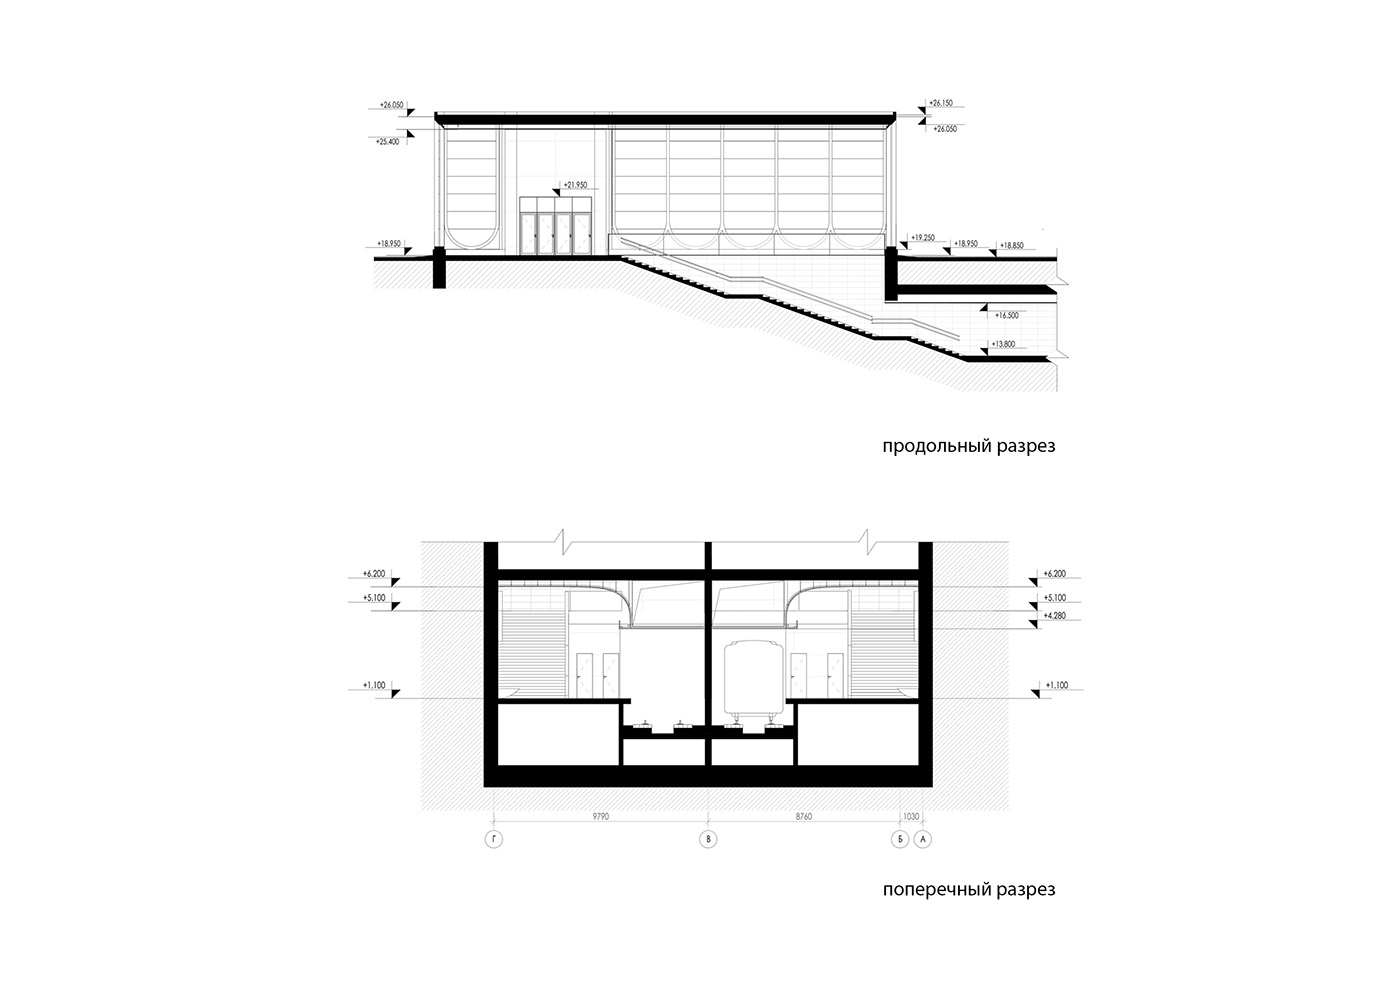 IND Architects architecture design public spaces subway concept architectural concept